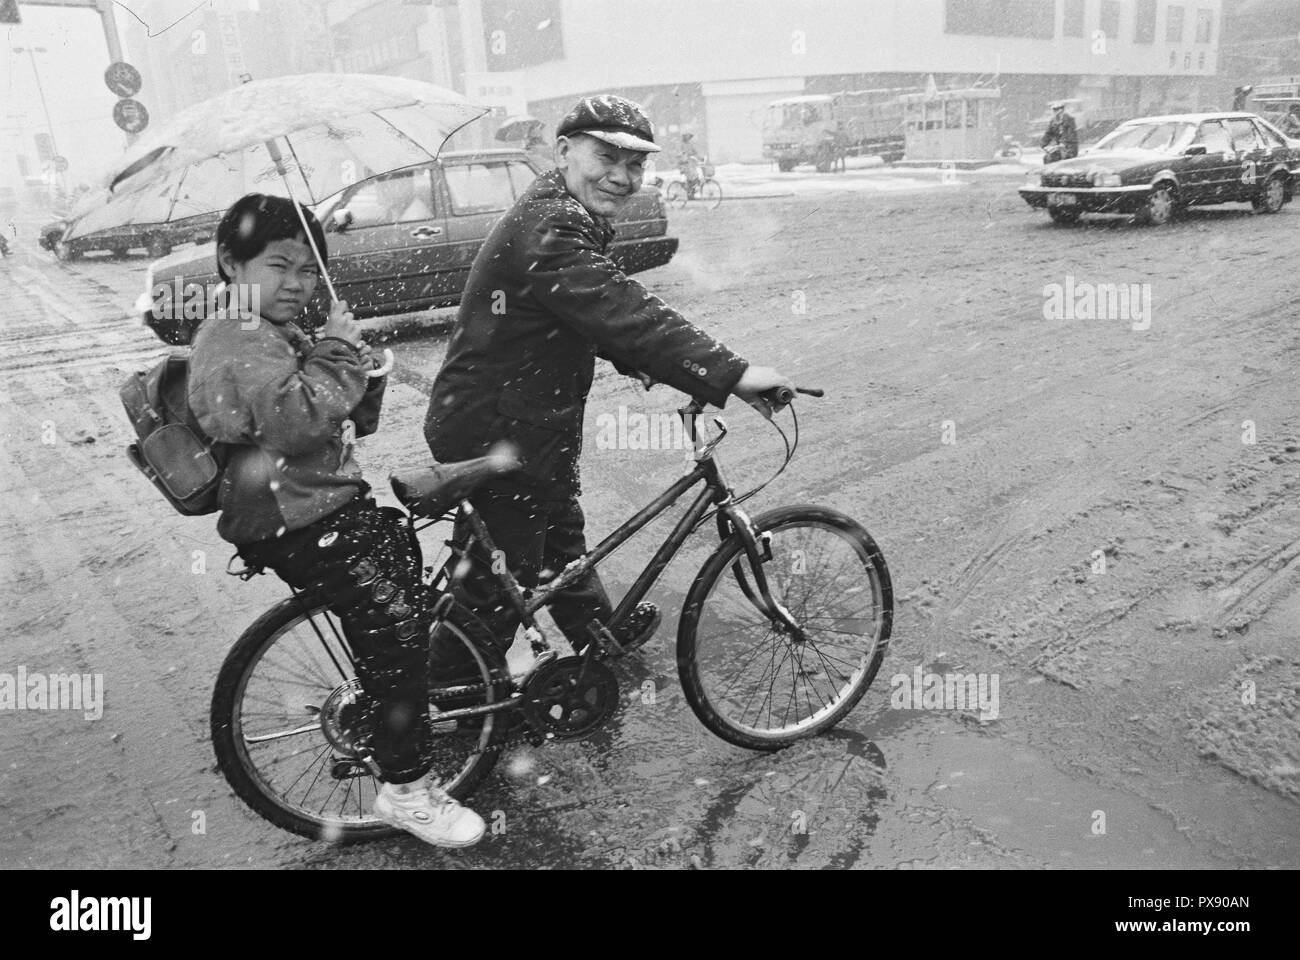 (181020) - Peking, Oktober 20, 2018 (Xinhua) - Foto 1994 zeigt einen Mann, der ein Kind mit dem Fahrrad in den Schnee in Qiqihar in die Schule genommen, im Nordosten der chinesischen Provinz Heilongjiang. Wenn sie nach Peking kam, der Hauptstadt von China, vor 40 Jahren, sie wurden wahrscheinlich durch die von ea in der Fahrräder" auf der Straße getroffen, ein einzigartiges Phänomen verdienen China den Titel "Königreich der Fahrräder". Damals gewöhnlichen chinesischen konnte es sich nicht leisten, Autos und nur wenige Menschen konnten fahren, geschweige denn häufig Fern- Reisen. Züge, die am häufigsten Verkehrsmittel dann, waren immer Stau - in der stickigen Co verpackt Stockfoto